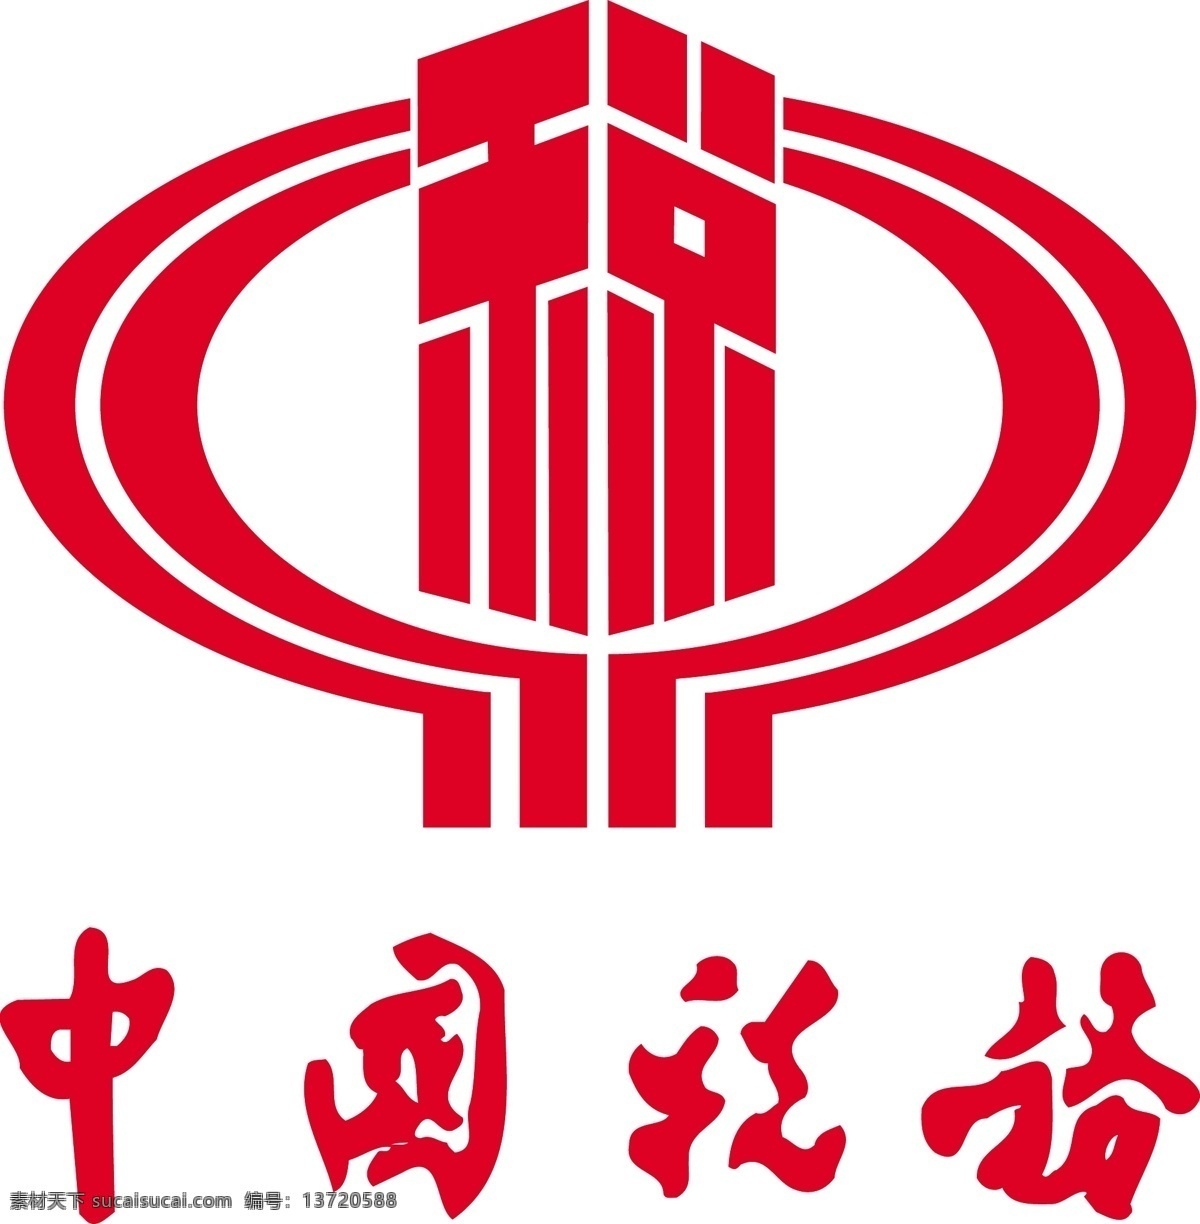 中国税务标志 税务 标志 标识标志图标 企业 logo 矢量图库